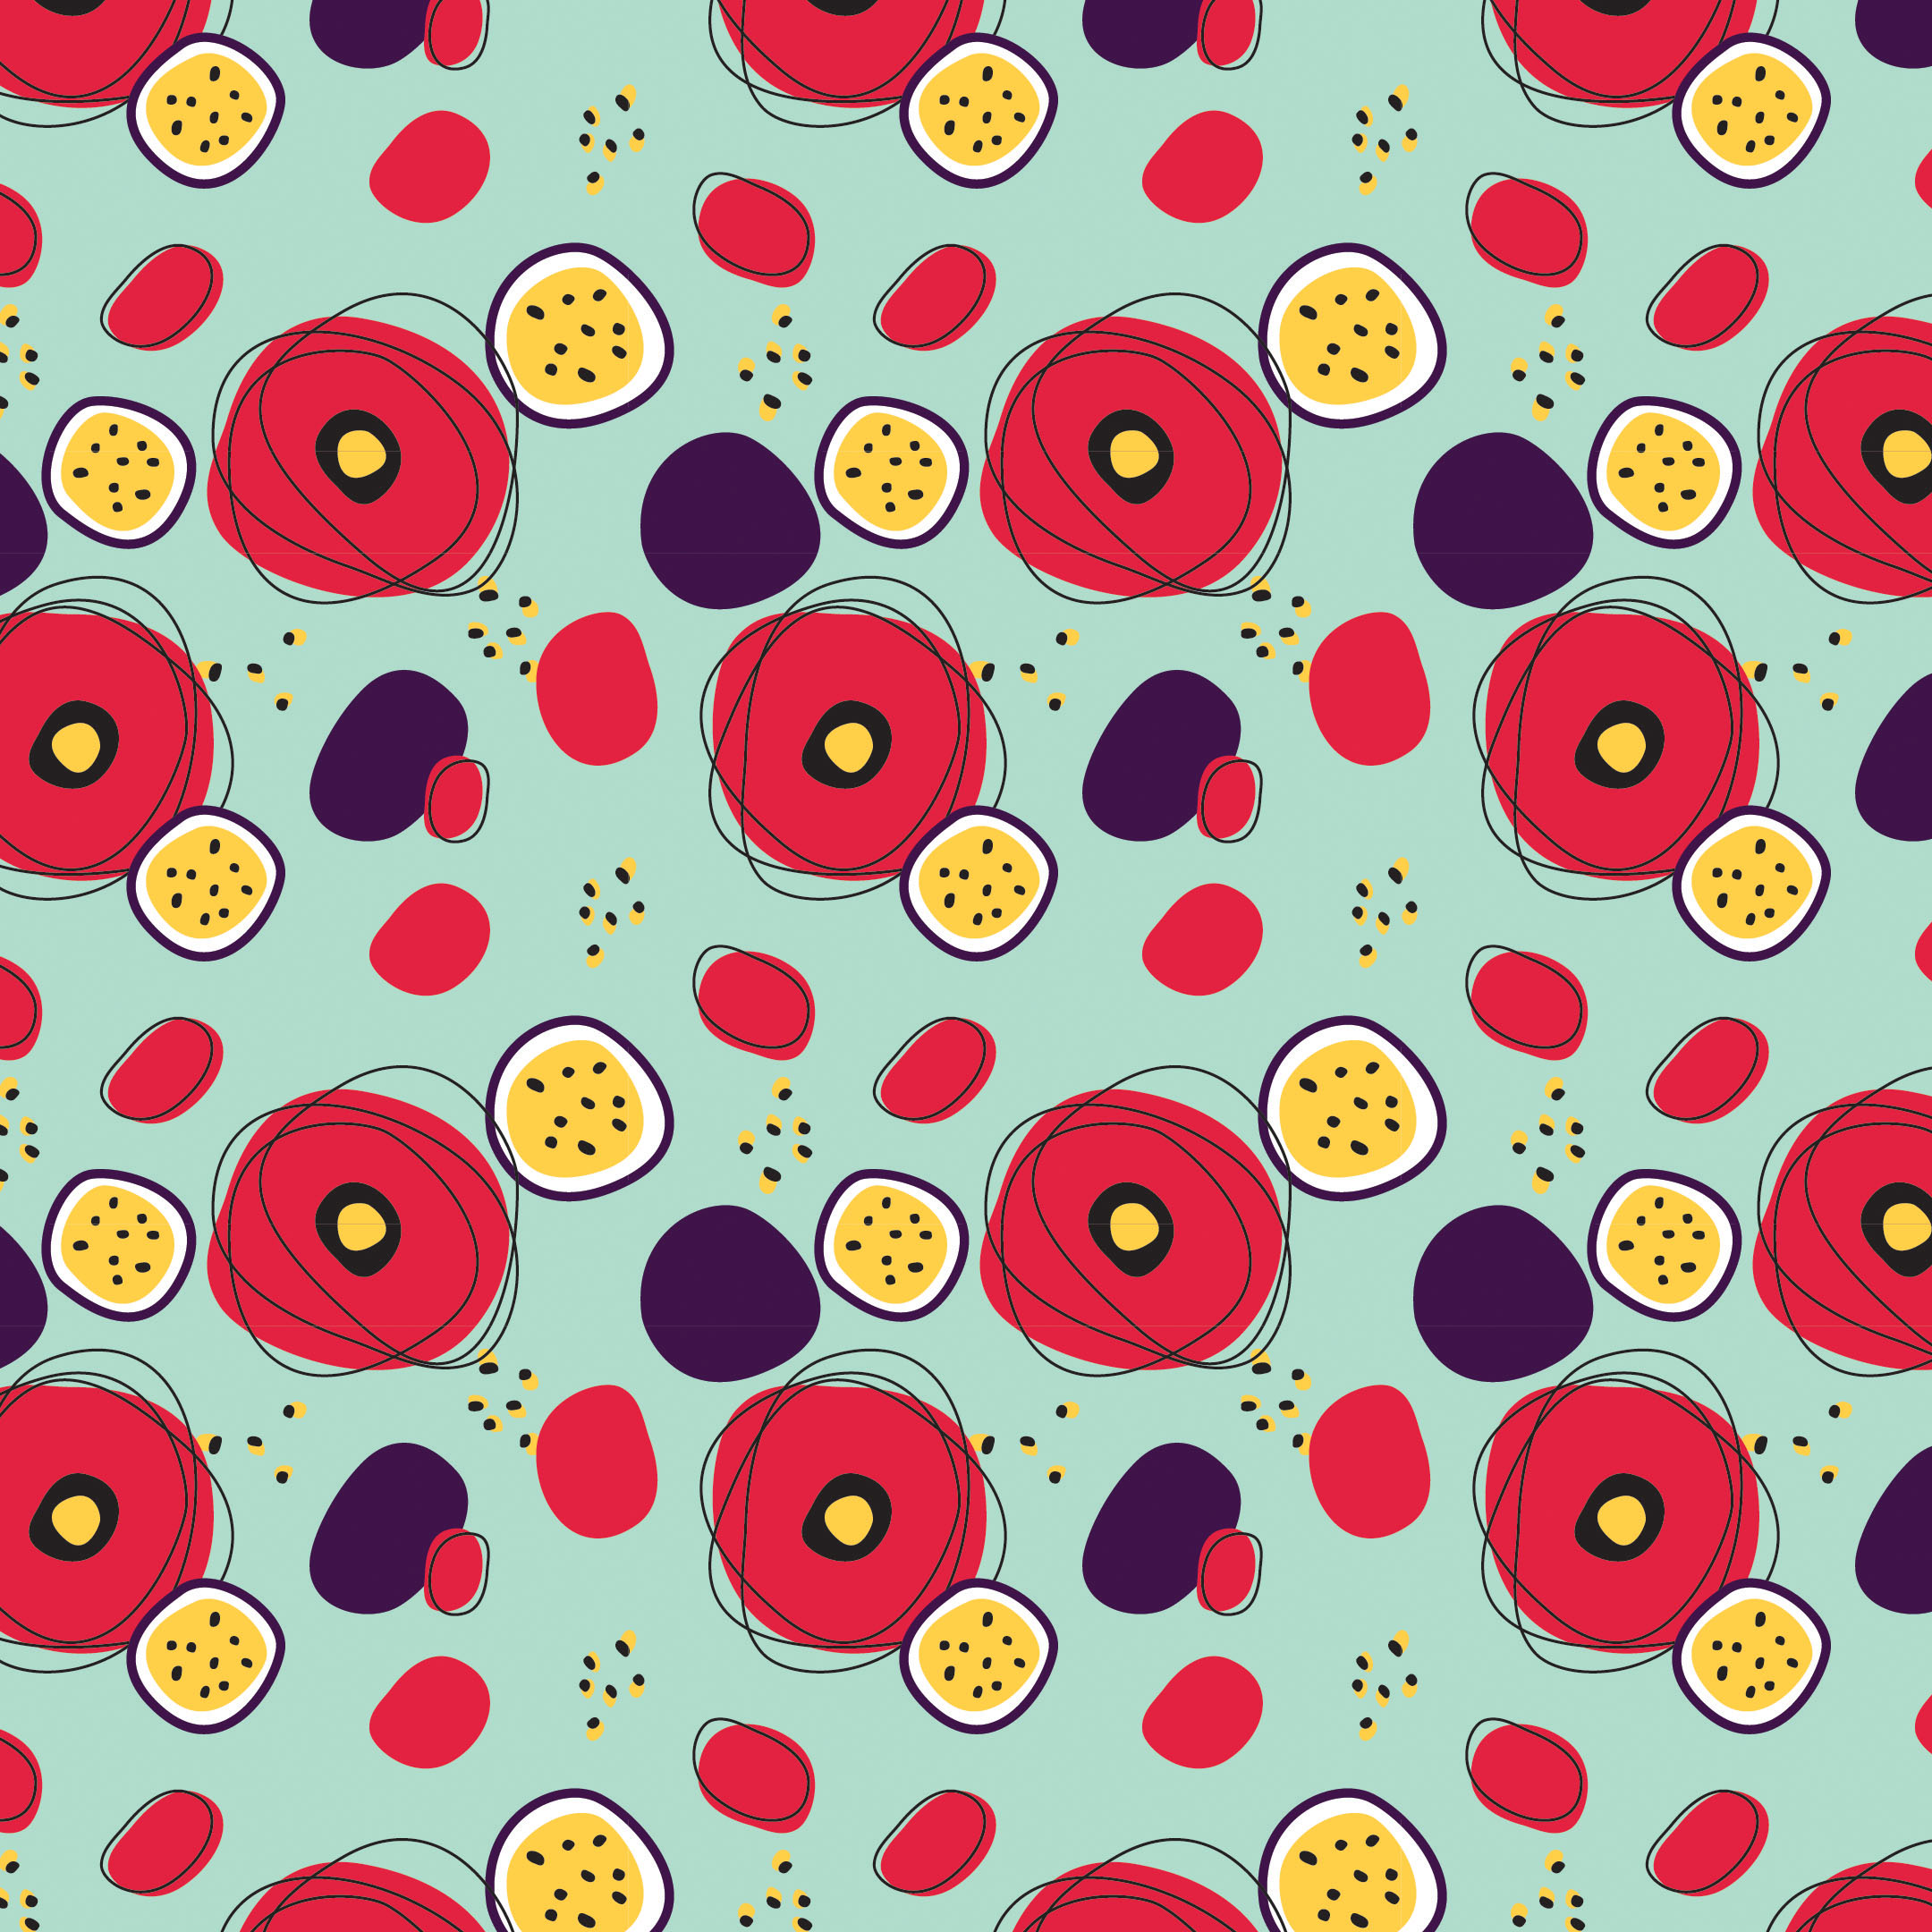 GBBO pattern art series by Sophia Adalaine // dessert week